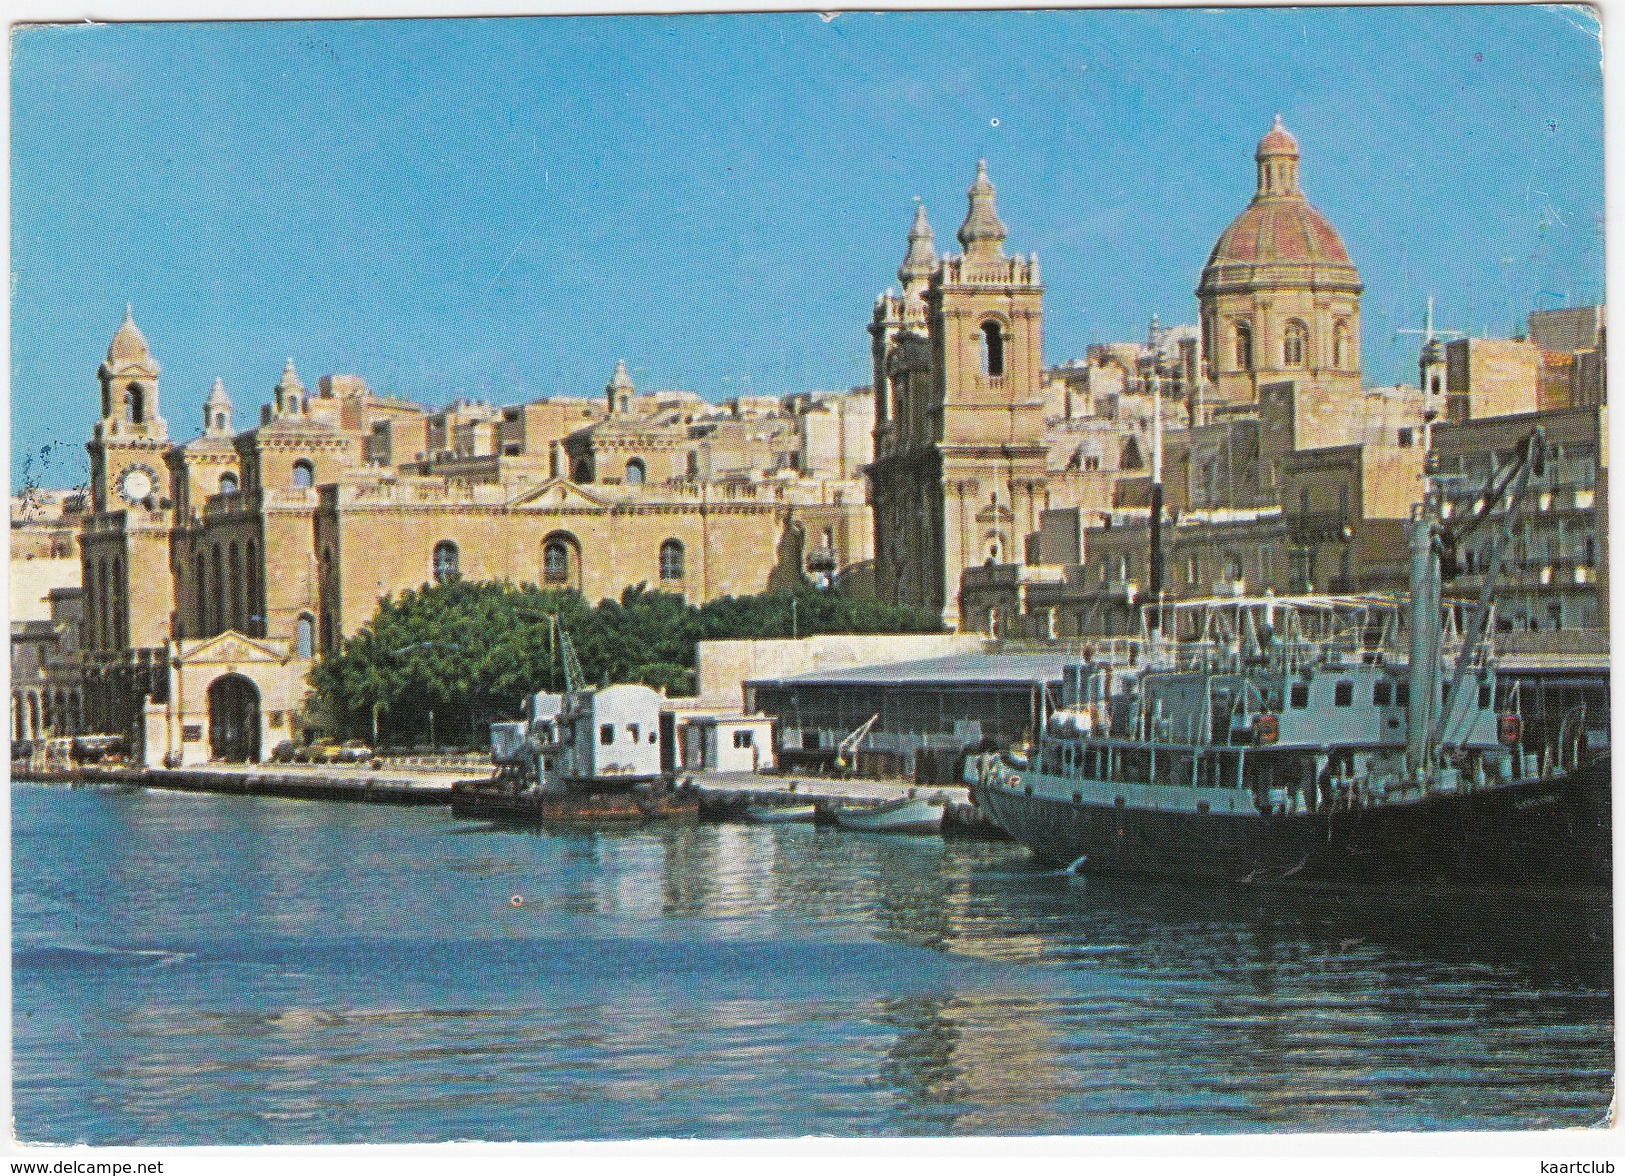 Vittoriosa - St. Lawrence Church - BOAT & CRANE - (Malta) - Malta